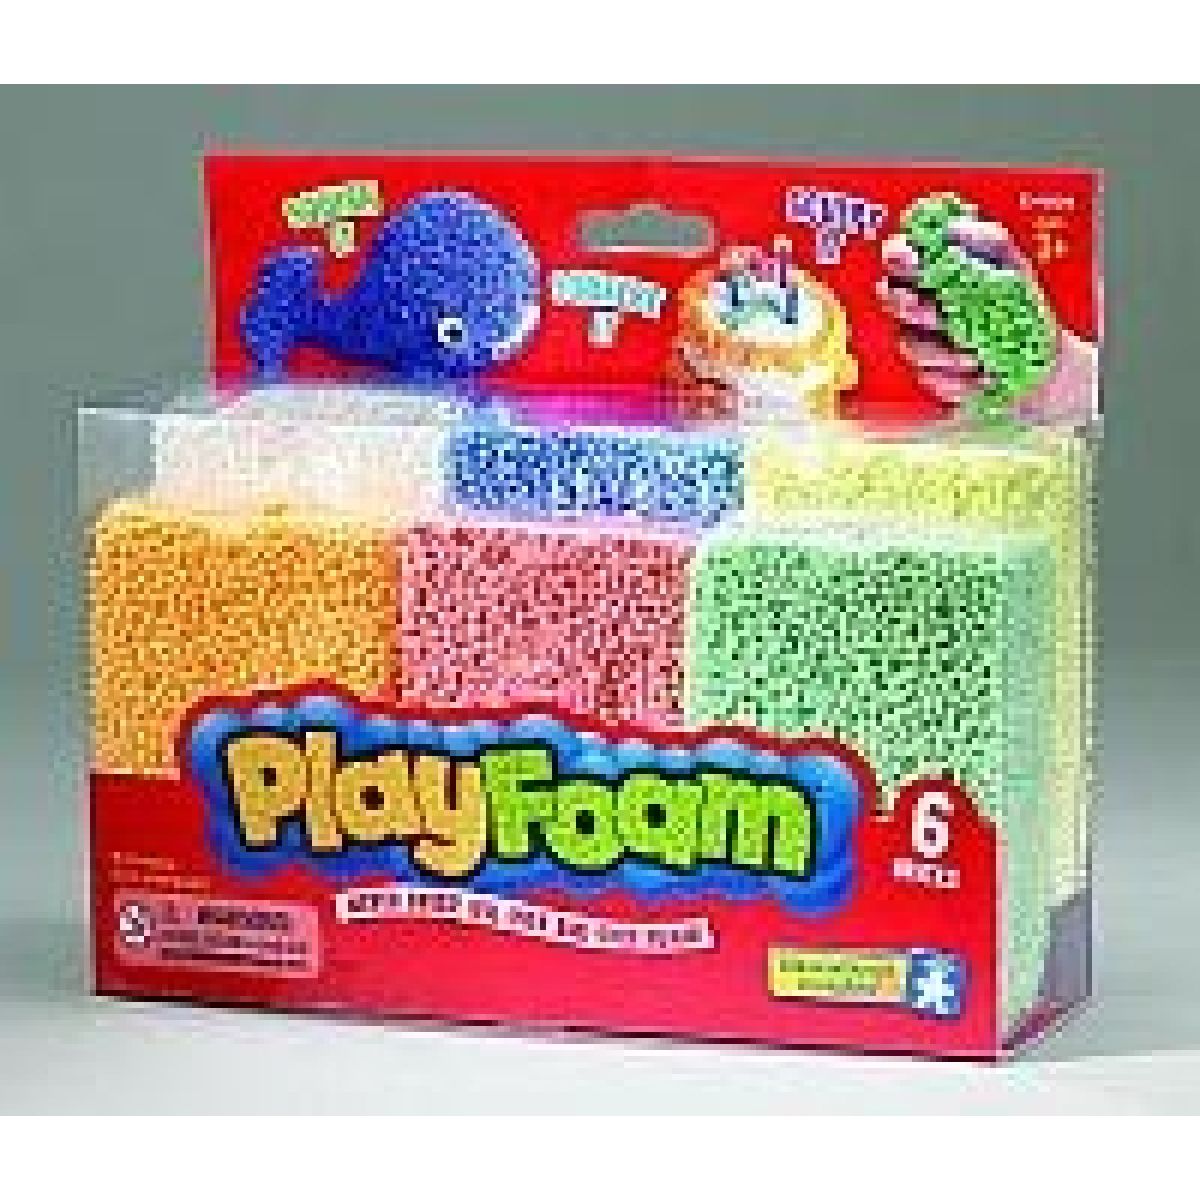 PlayFoam Starter 6-pack